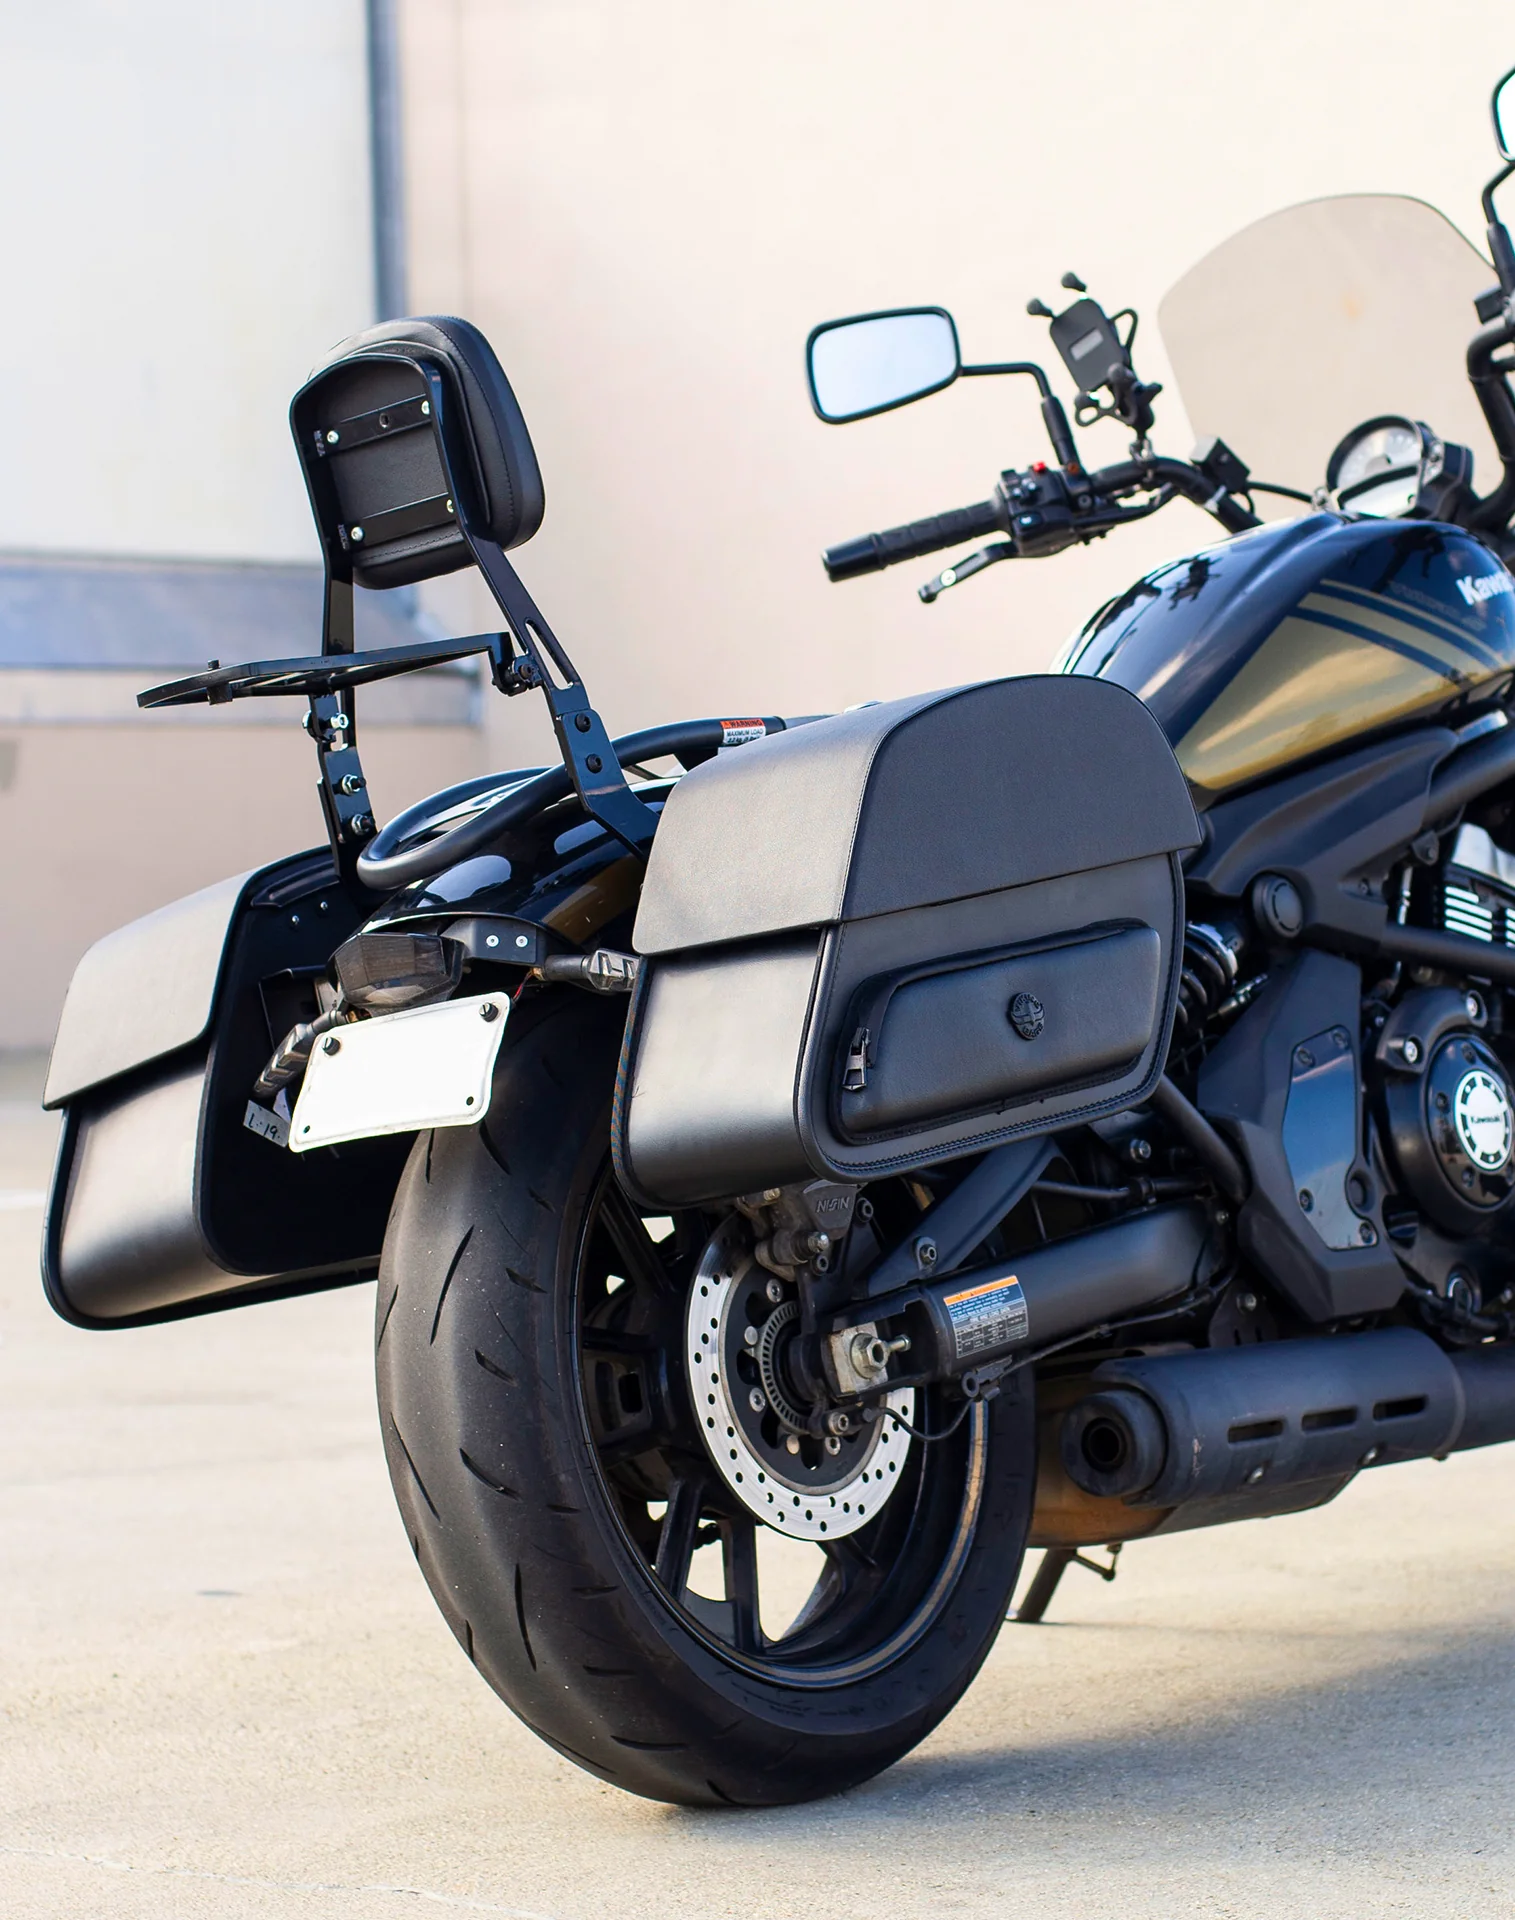 Viking Pantheon Medium Kawasaki Vulcan S Leather Motorcycle Saddlebags are Durable